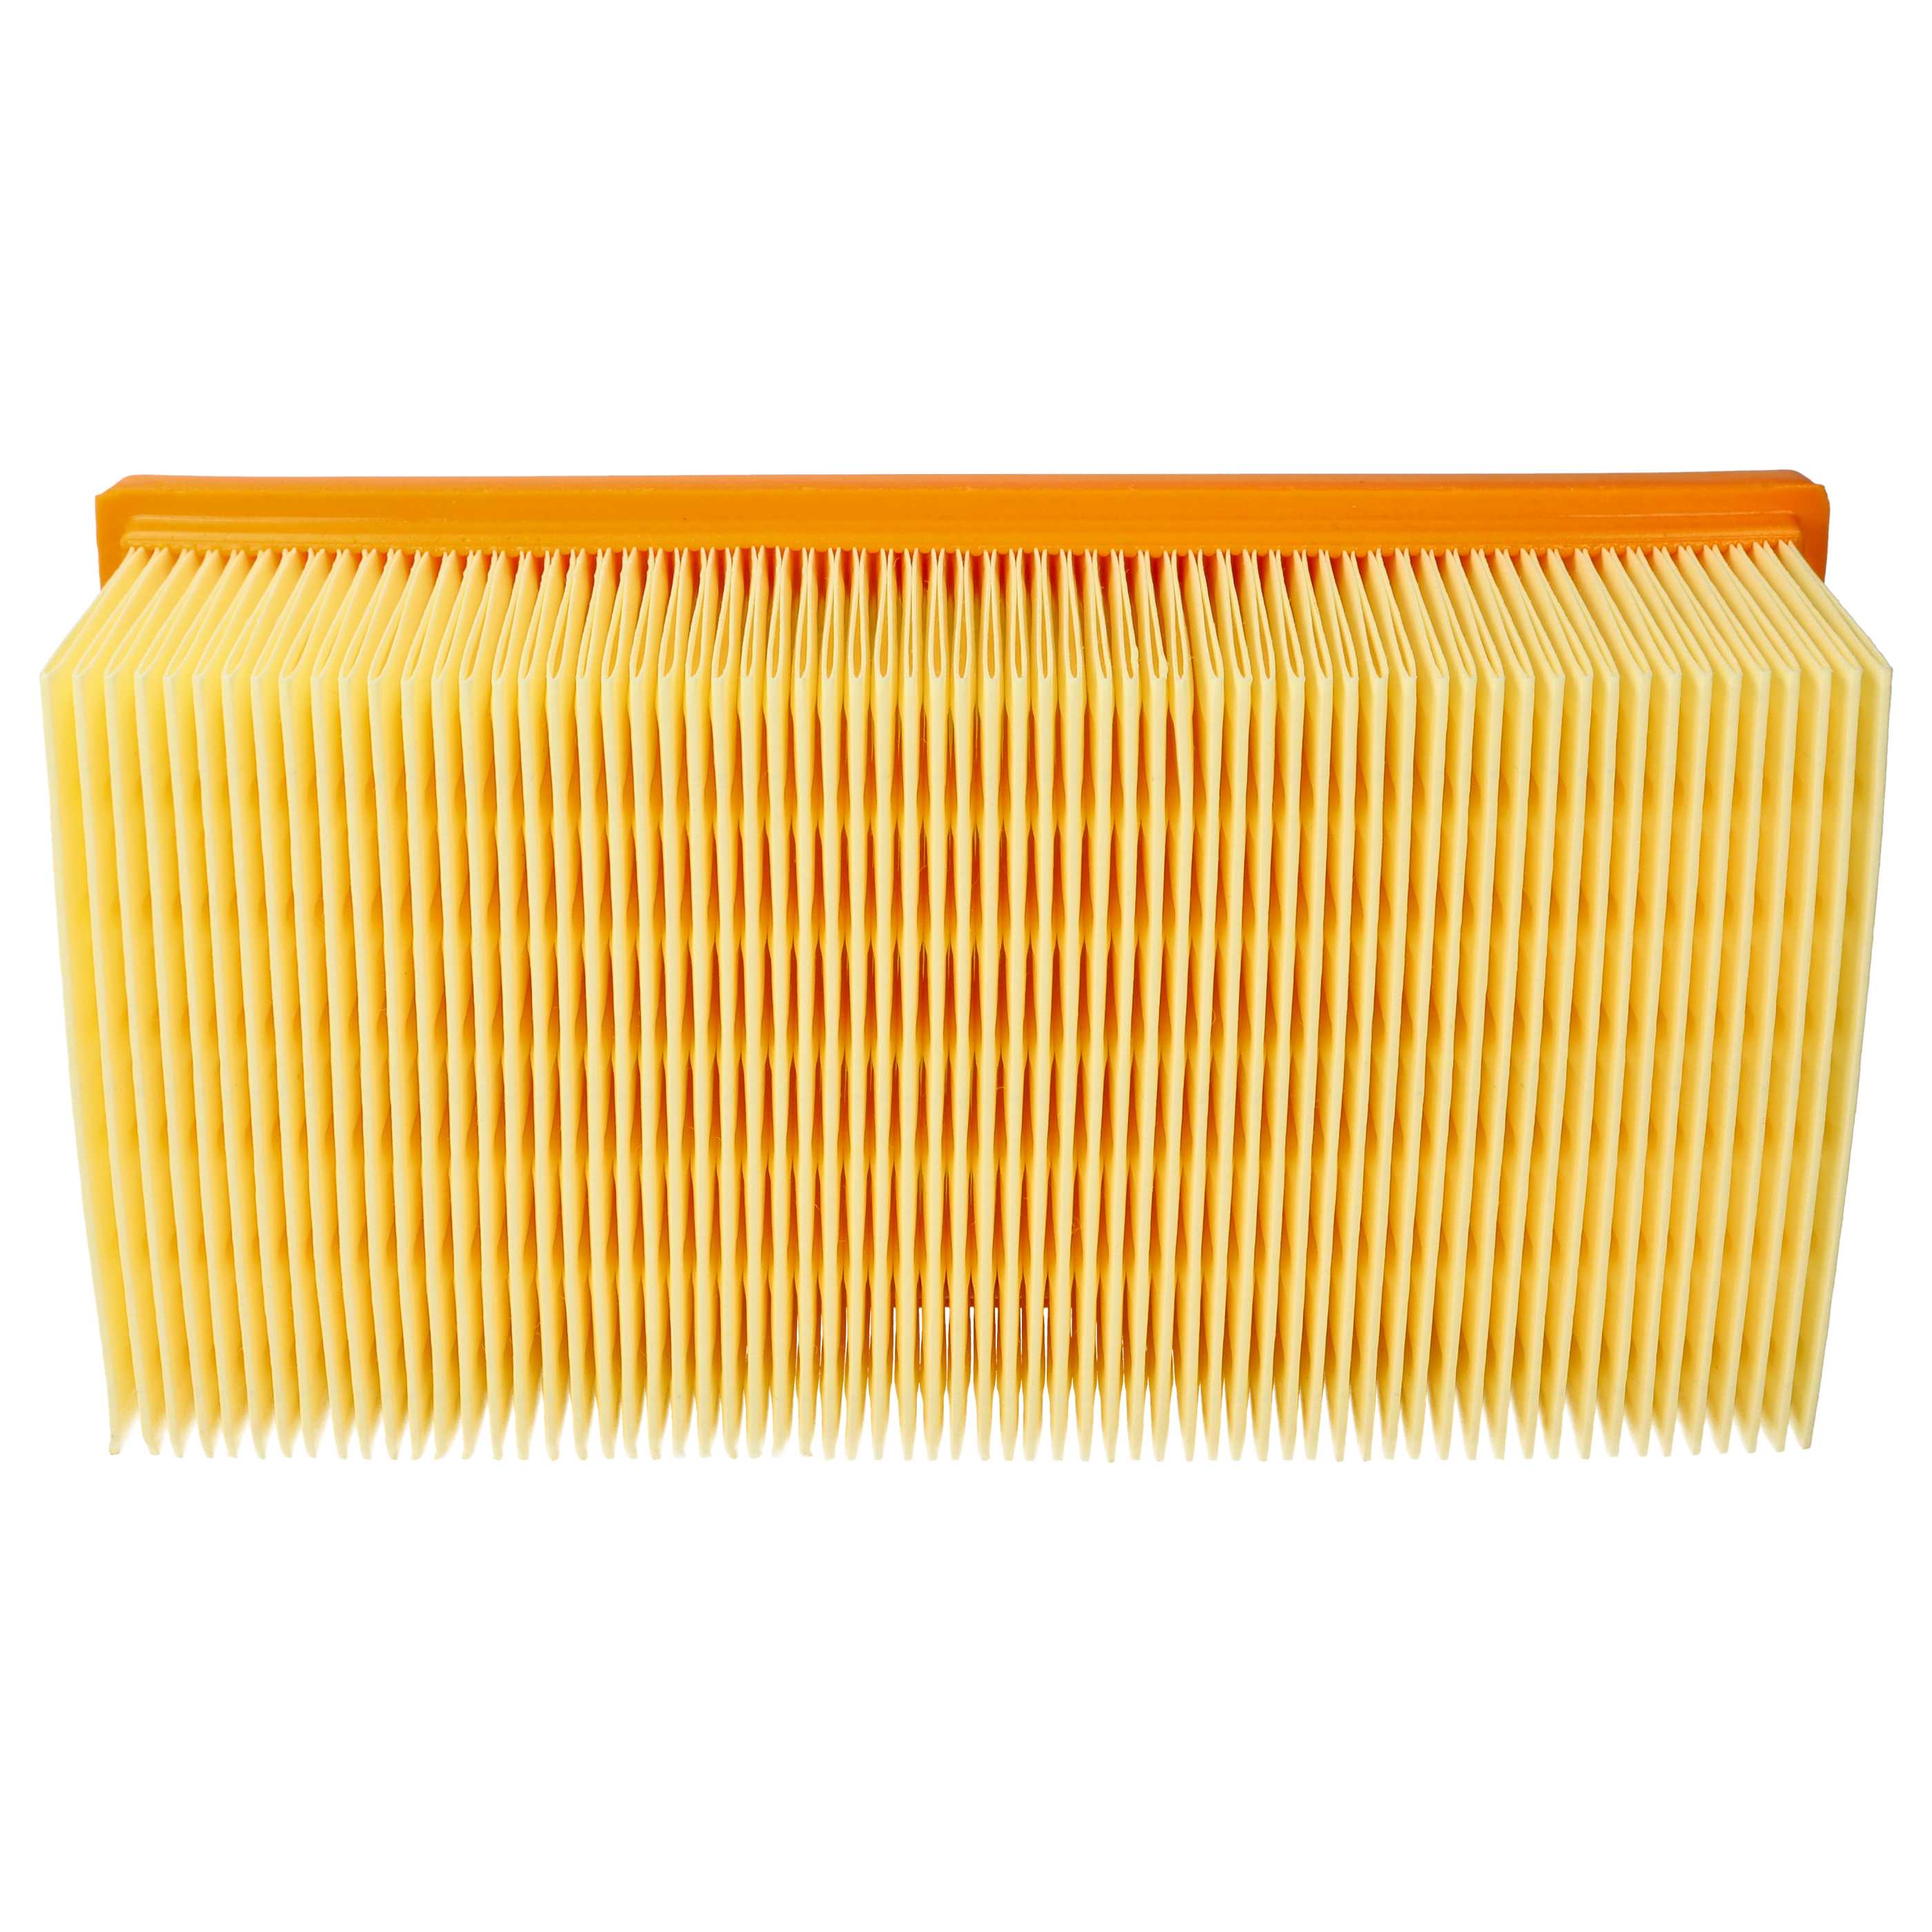 1x flat pleated filter replaces Festool 452923, 500558 for KränzleVacuum Cleaner